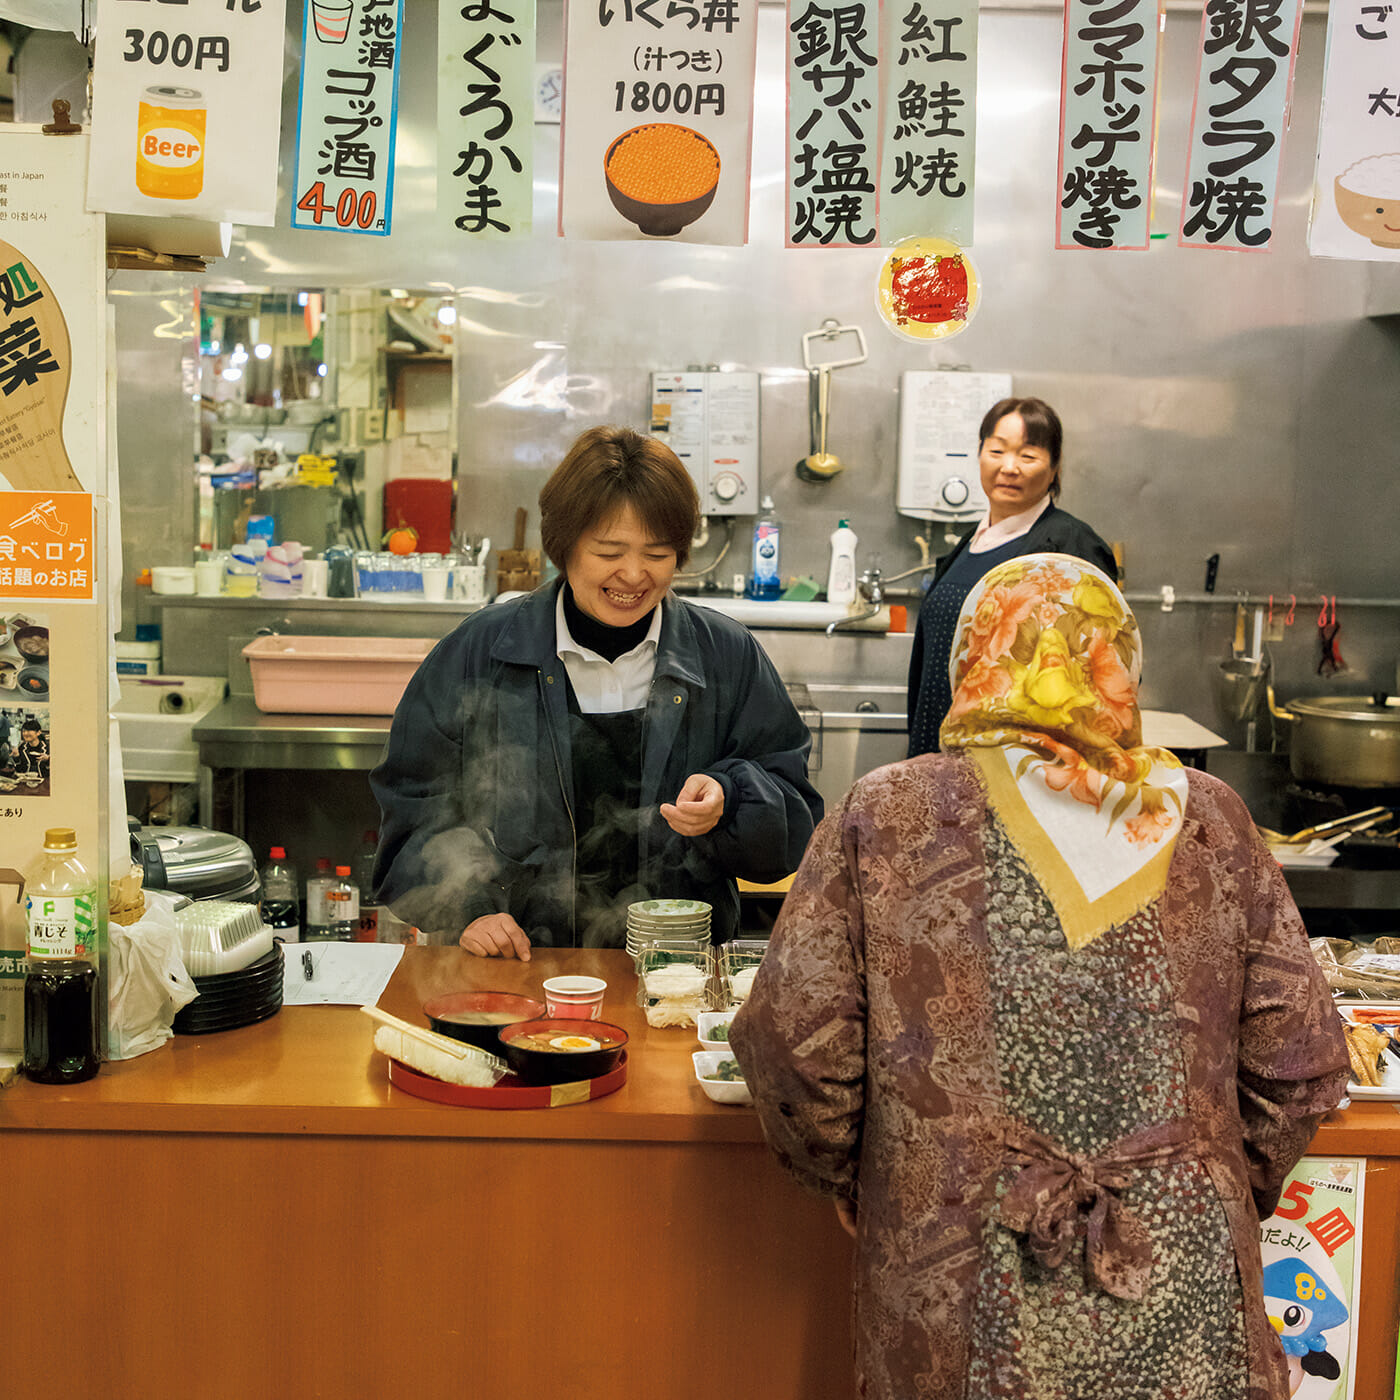 〈八戸市営魚菜小売市場〉内にある〈朝めし処 魚菜〉